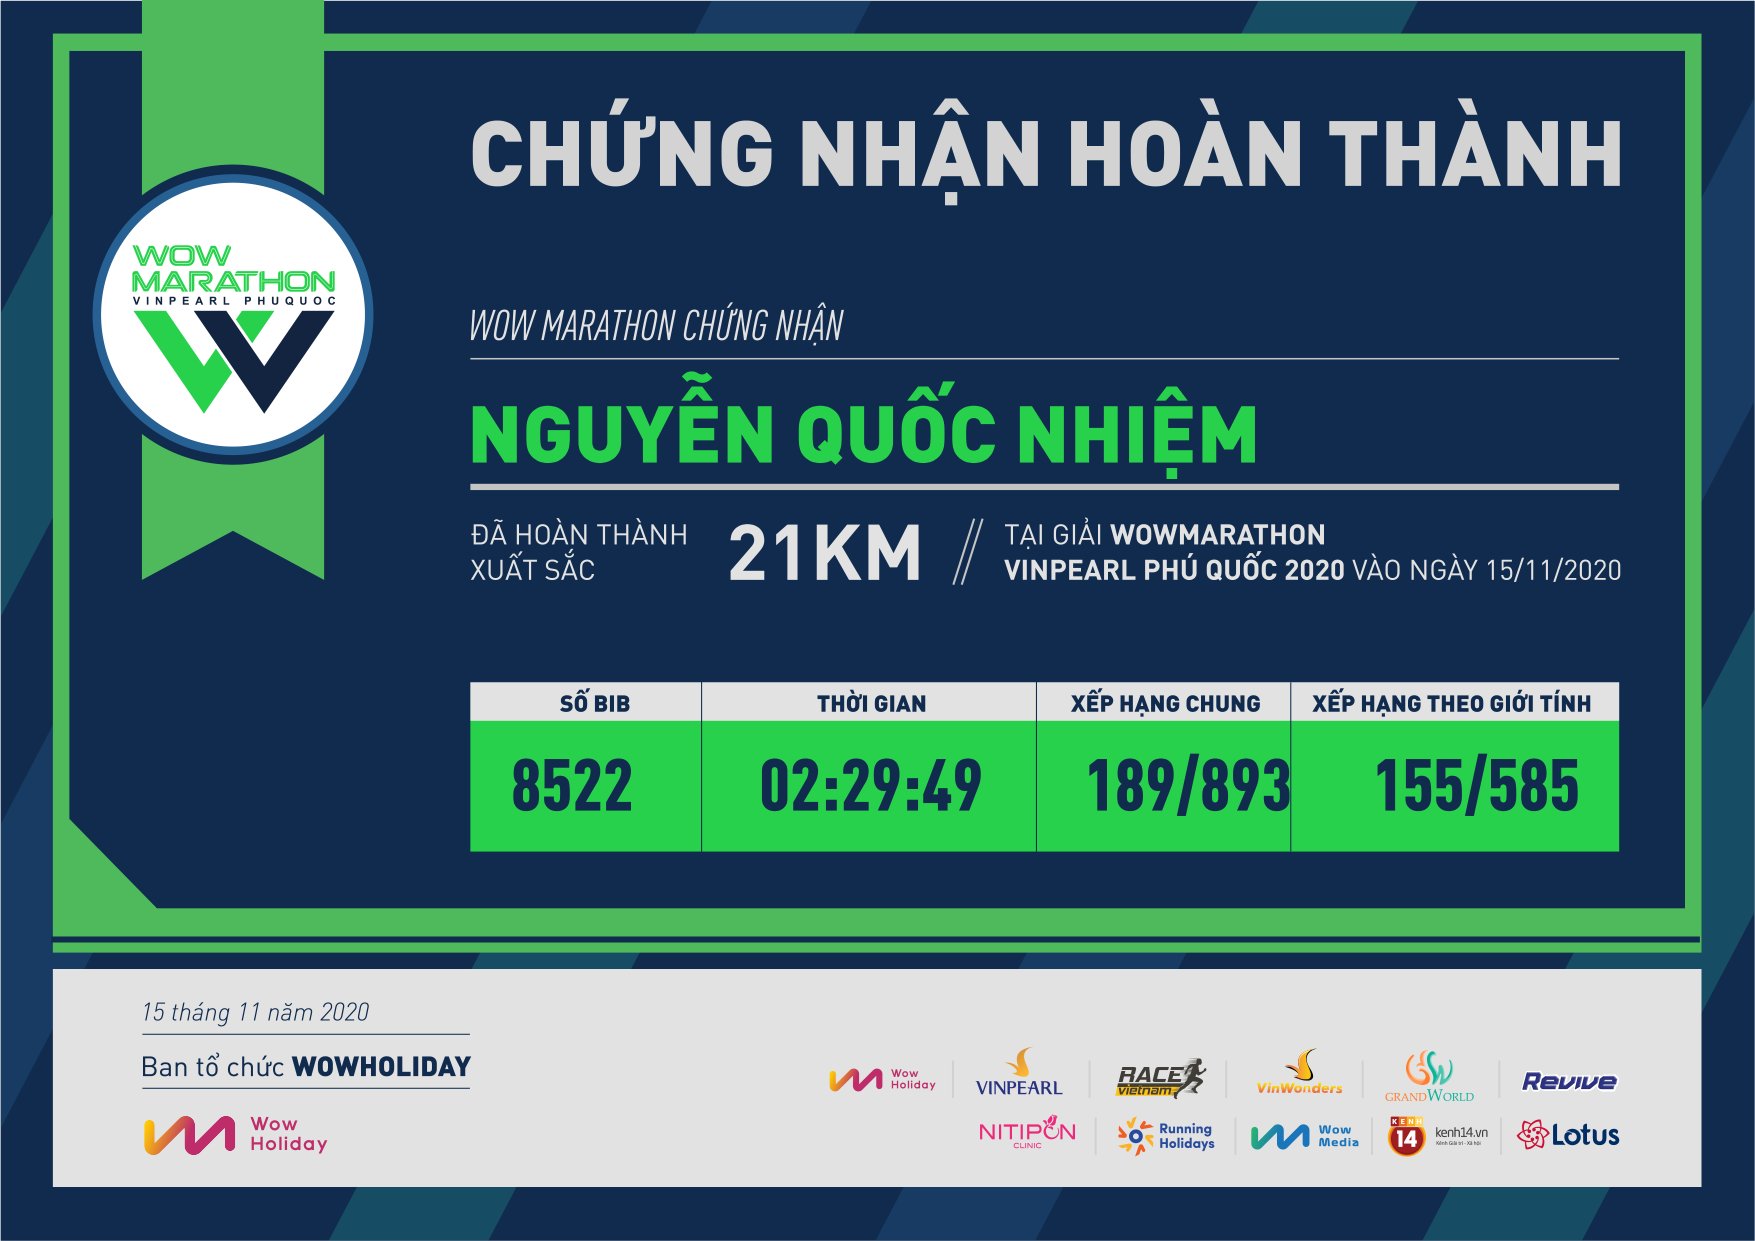 8522 - Nguyễn Quốc  Nhiệm